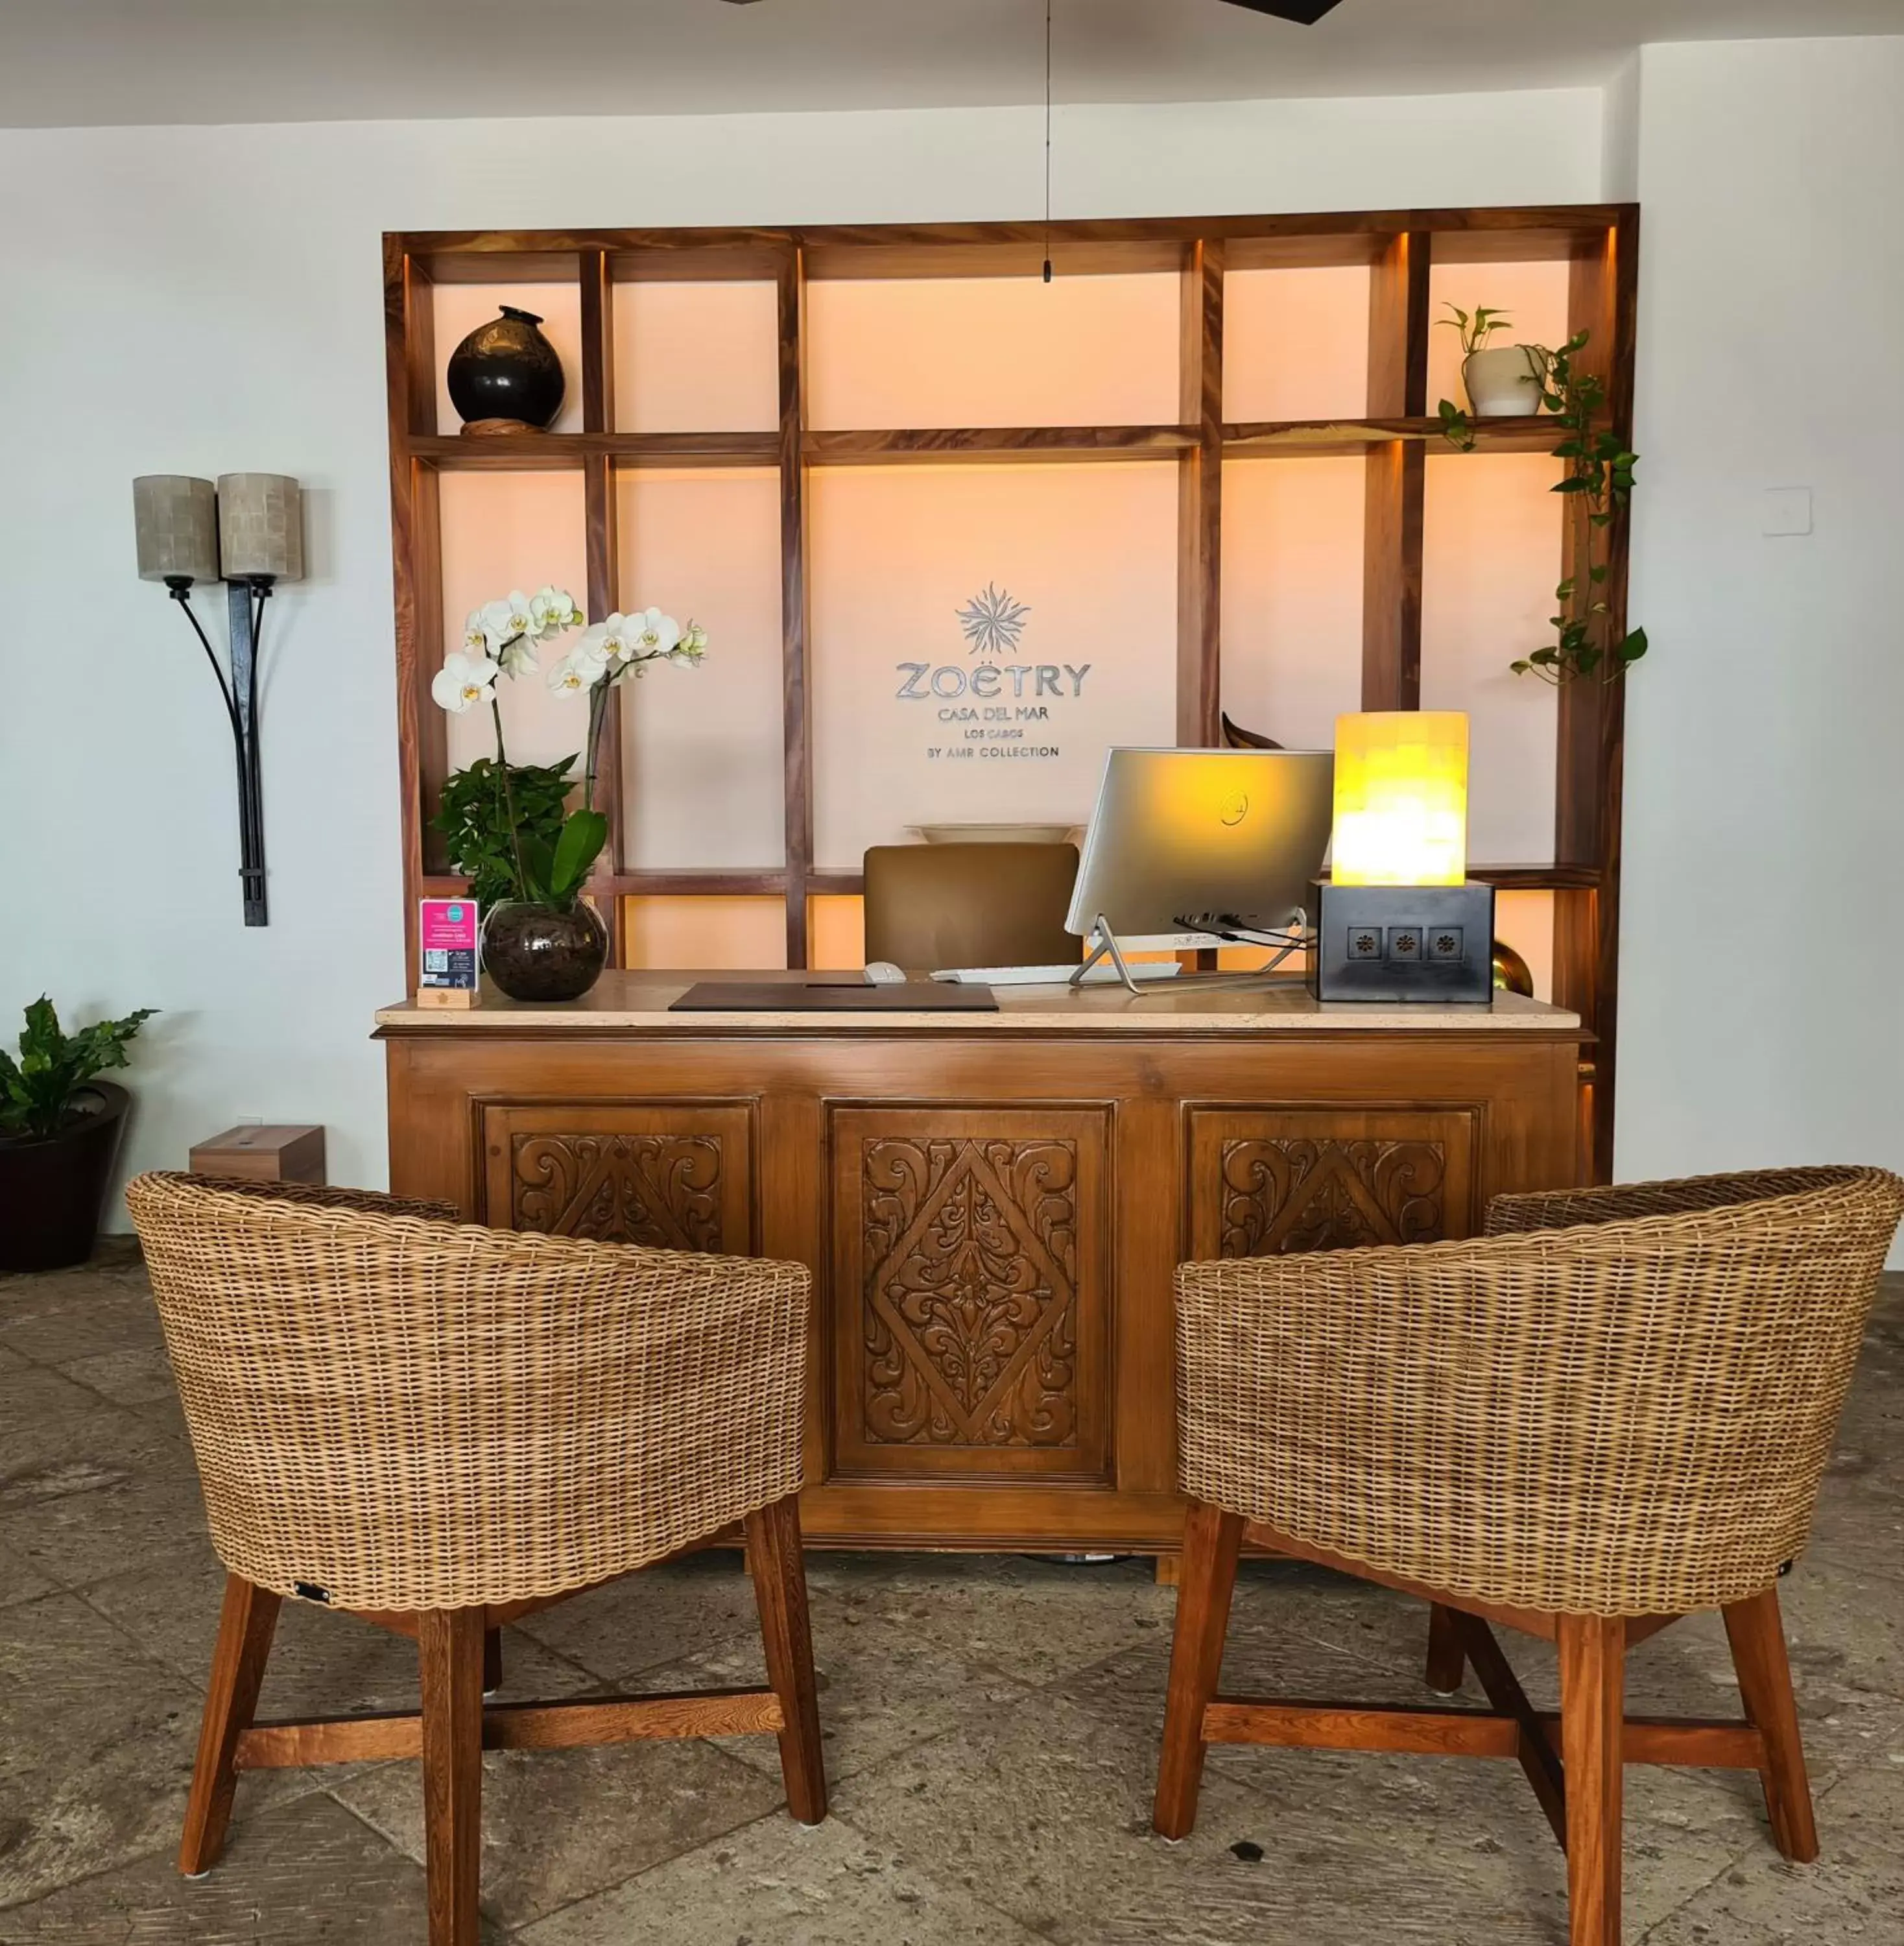 Lobby or reception in Zoetry Casa del Mar Los Cabos